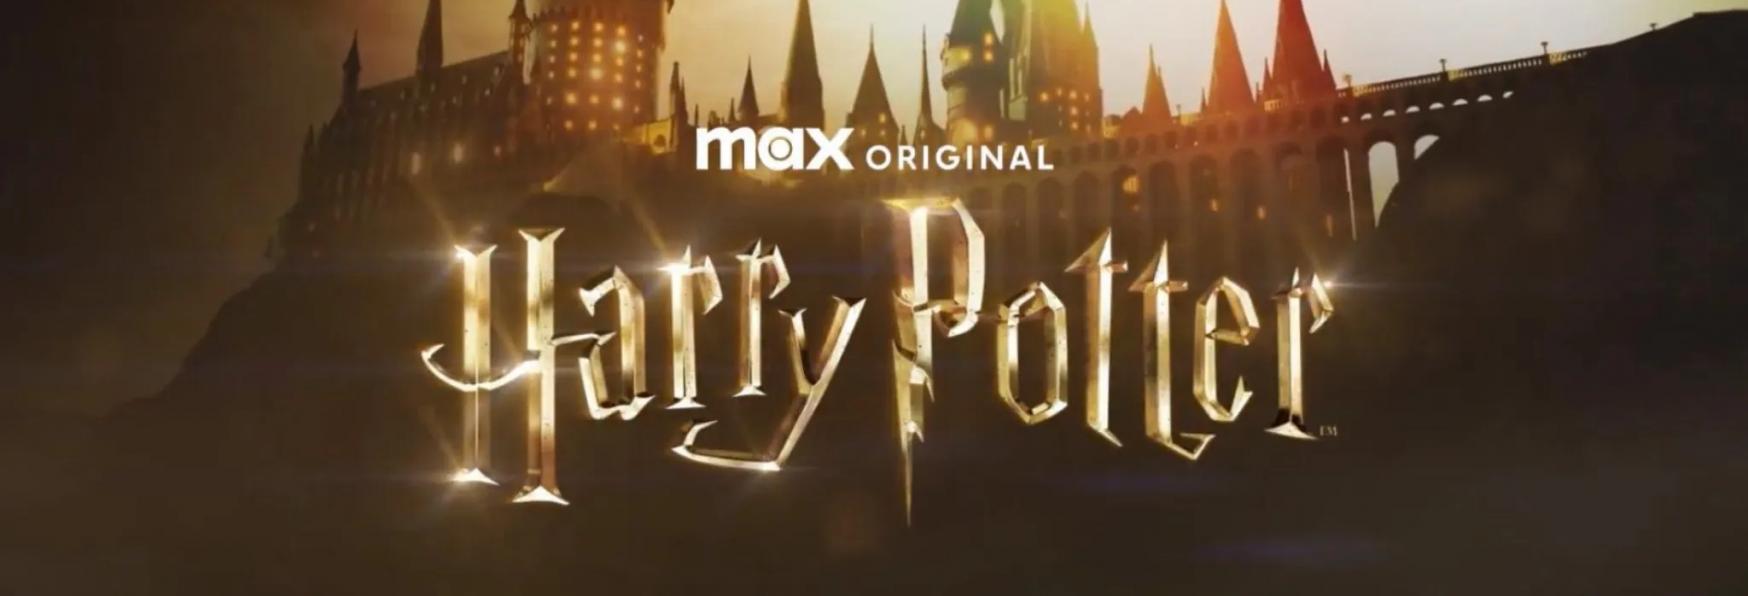 Harry Potter: Joseph Fiennes sarà nel Cast della Serie TV di Max?